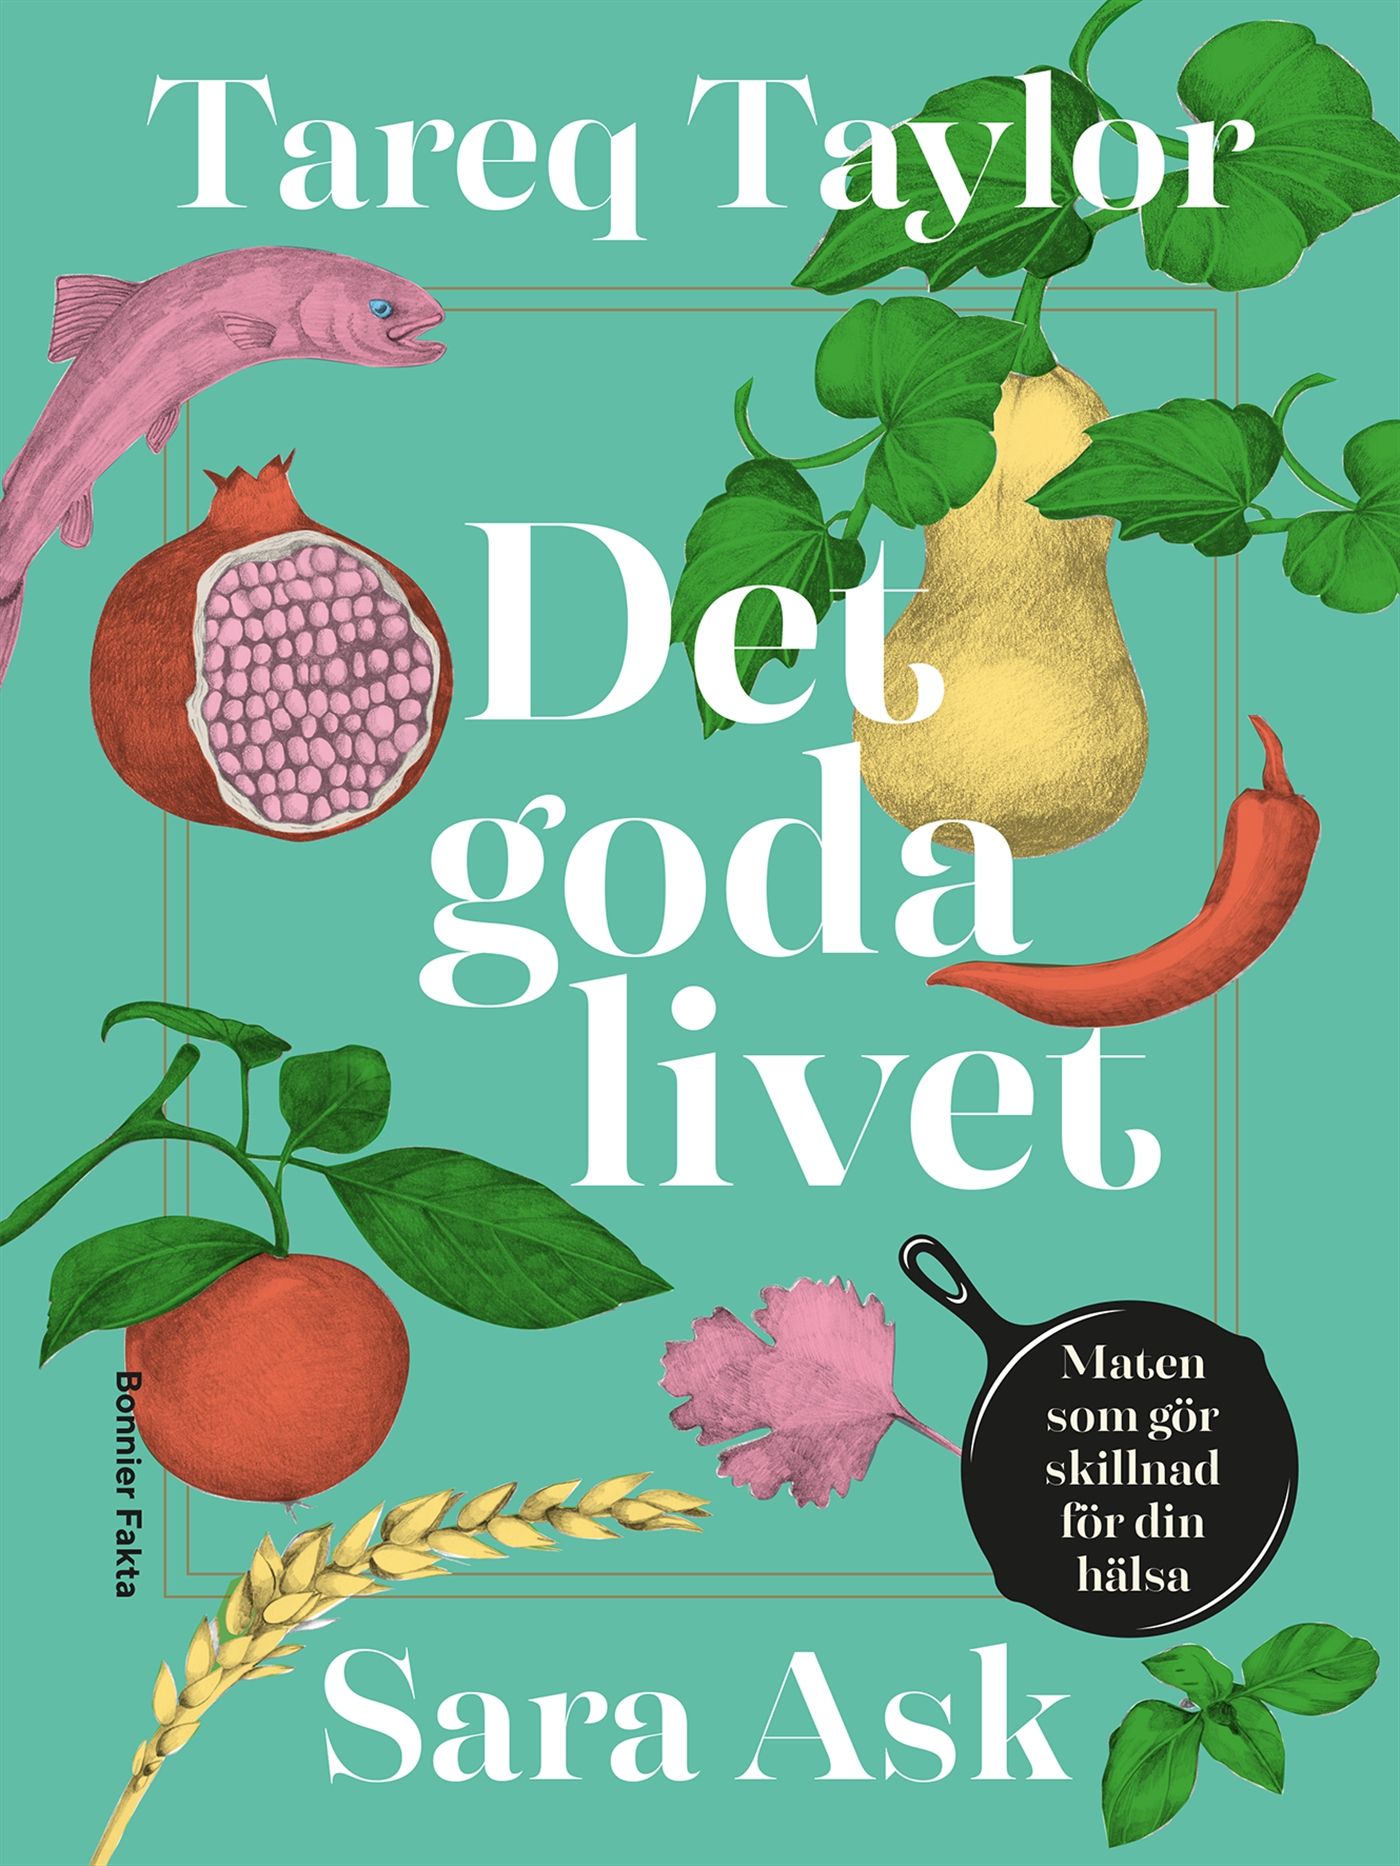 Det goda livet : Maten som gör skillnad för din hälsa, eBook by Sara Ask, Tareq Taylor